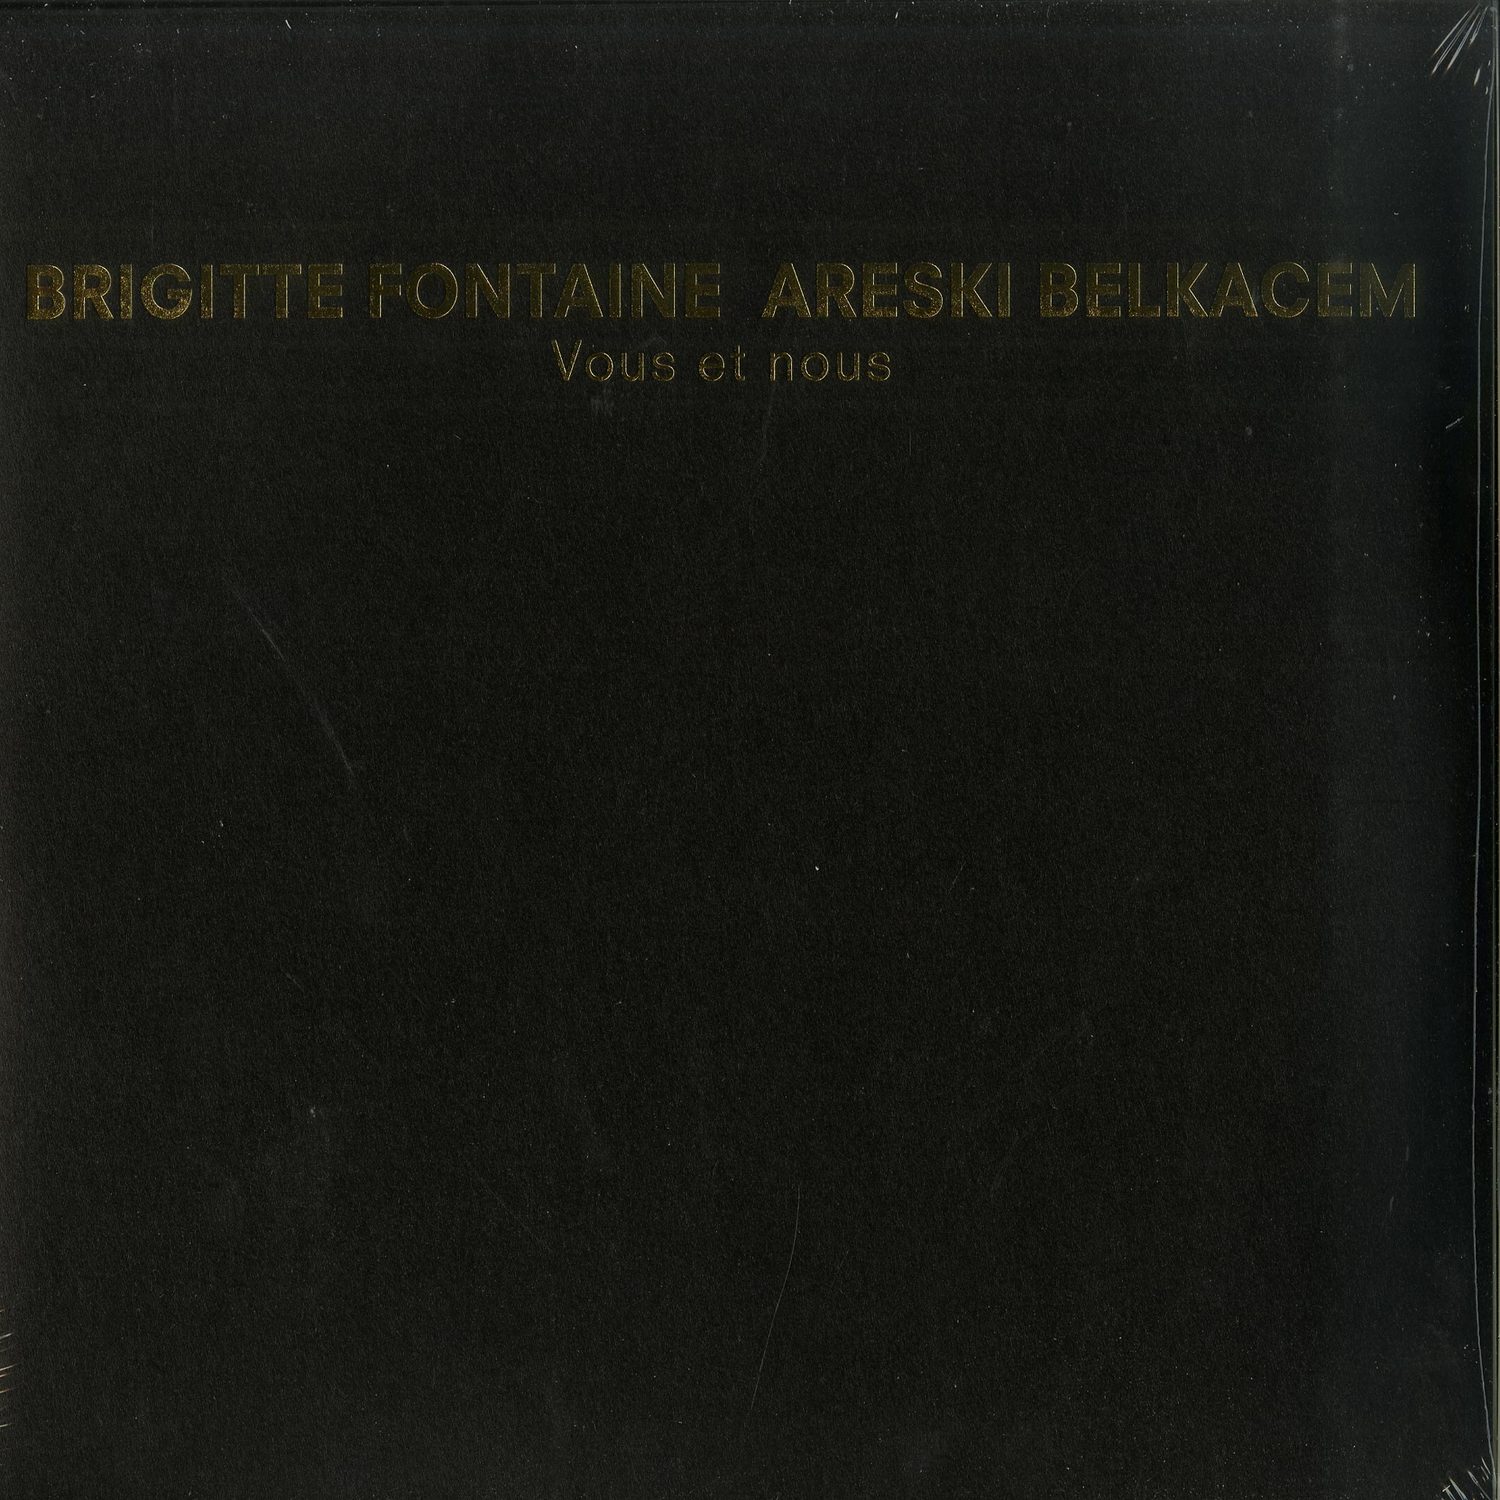 Brigitte Fontaine & Areski Belkacem - VOUS ET NOUS 